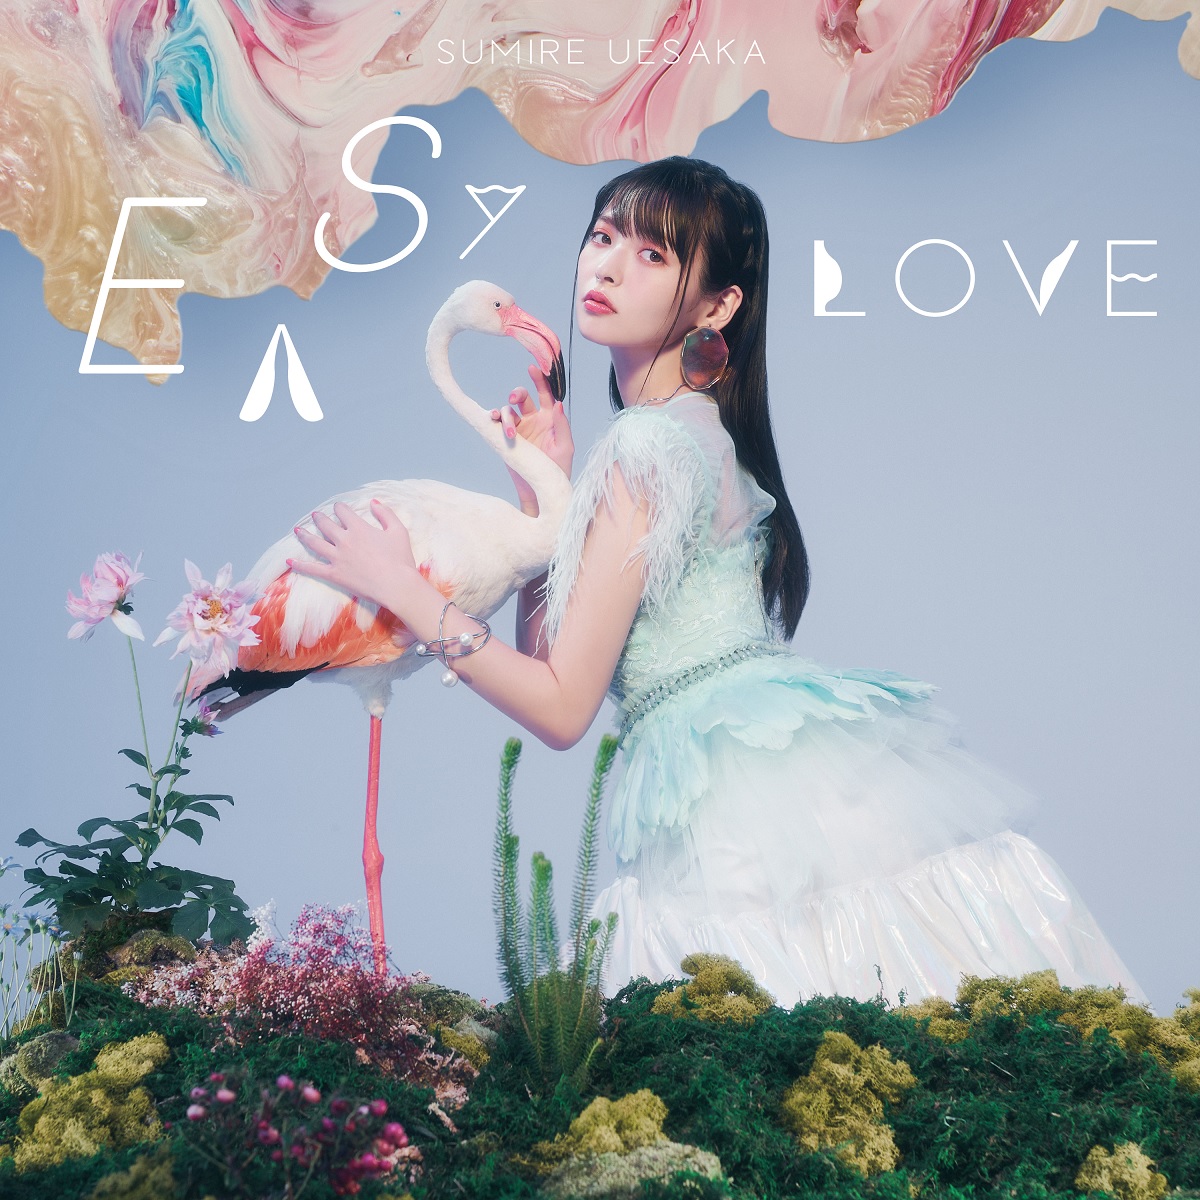 『上坂すみれ - 夢みるメイドガール』収録の『EASY LOVE』ジャケット